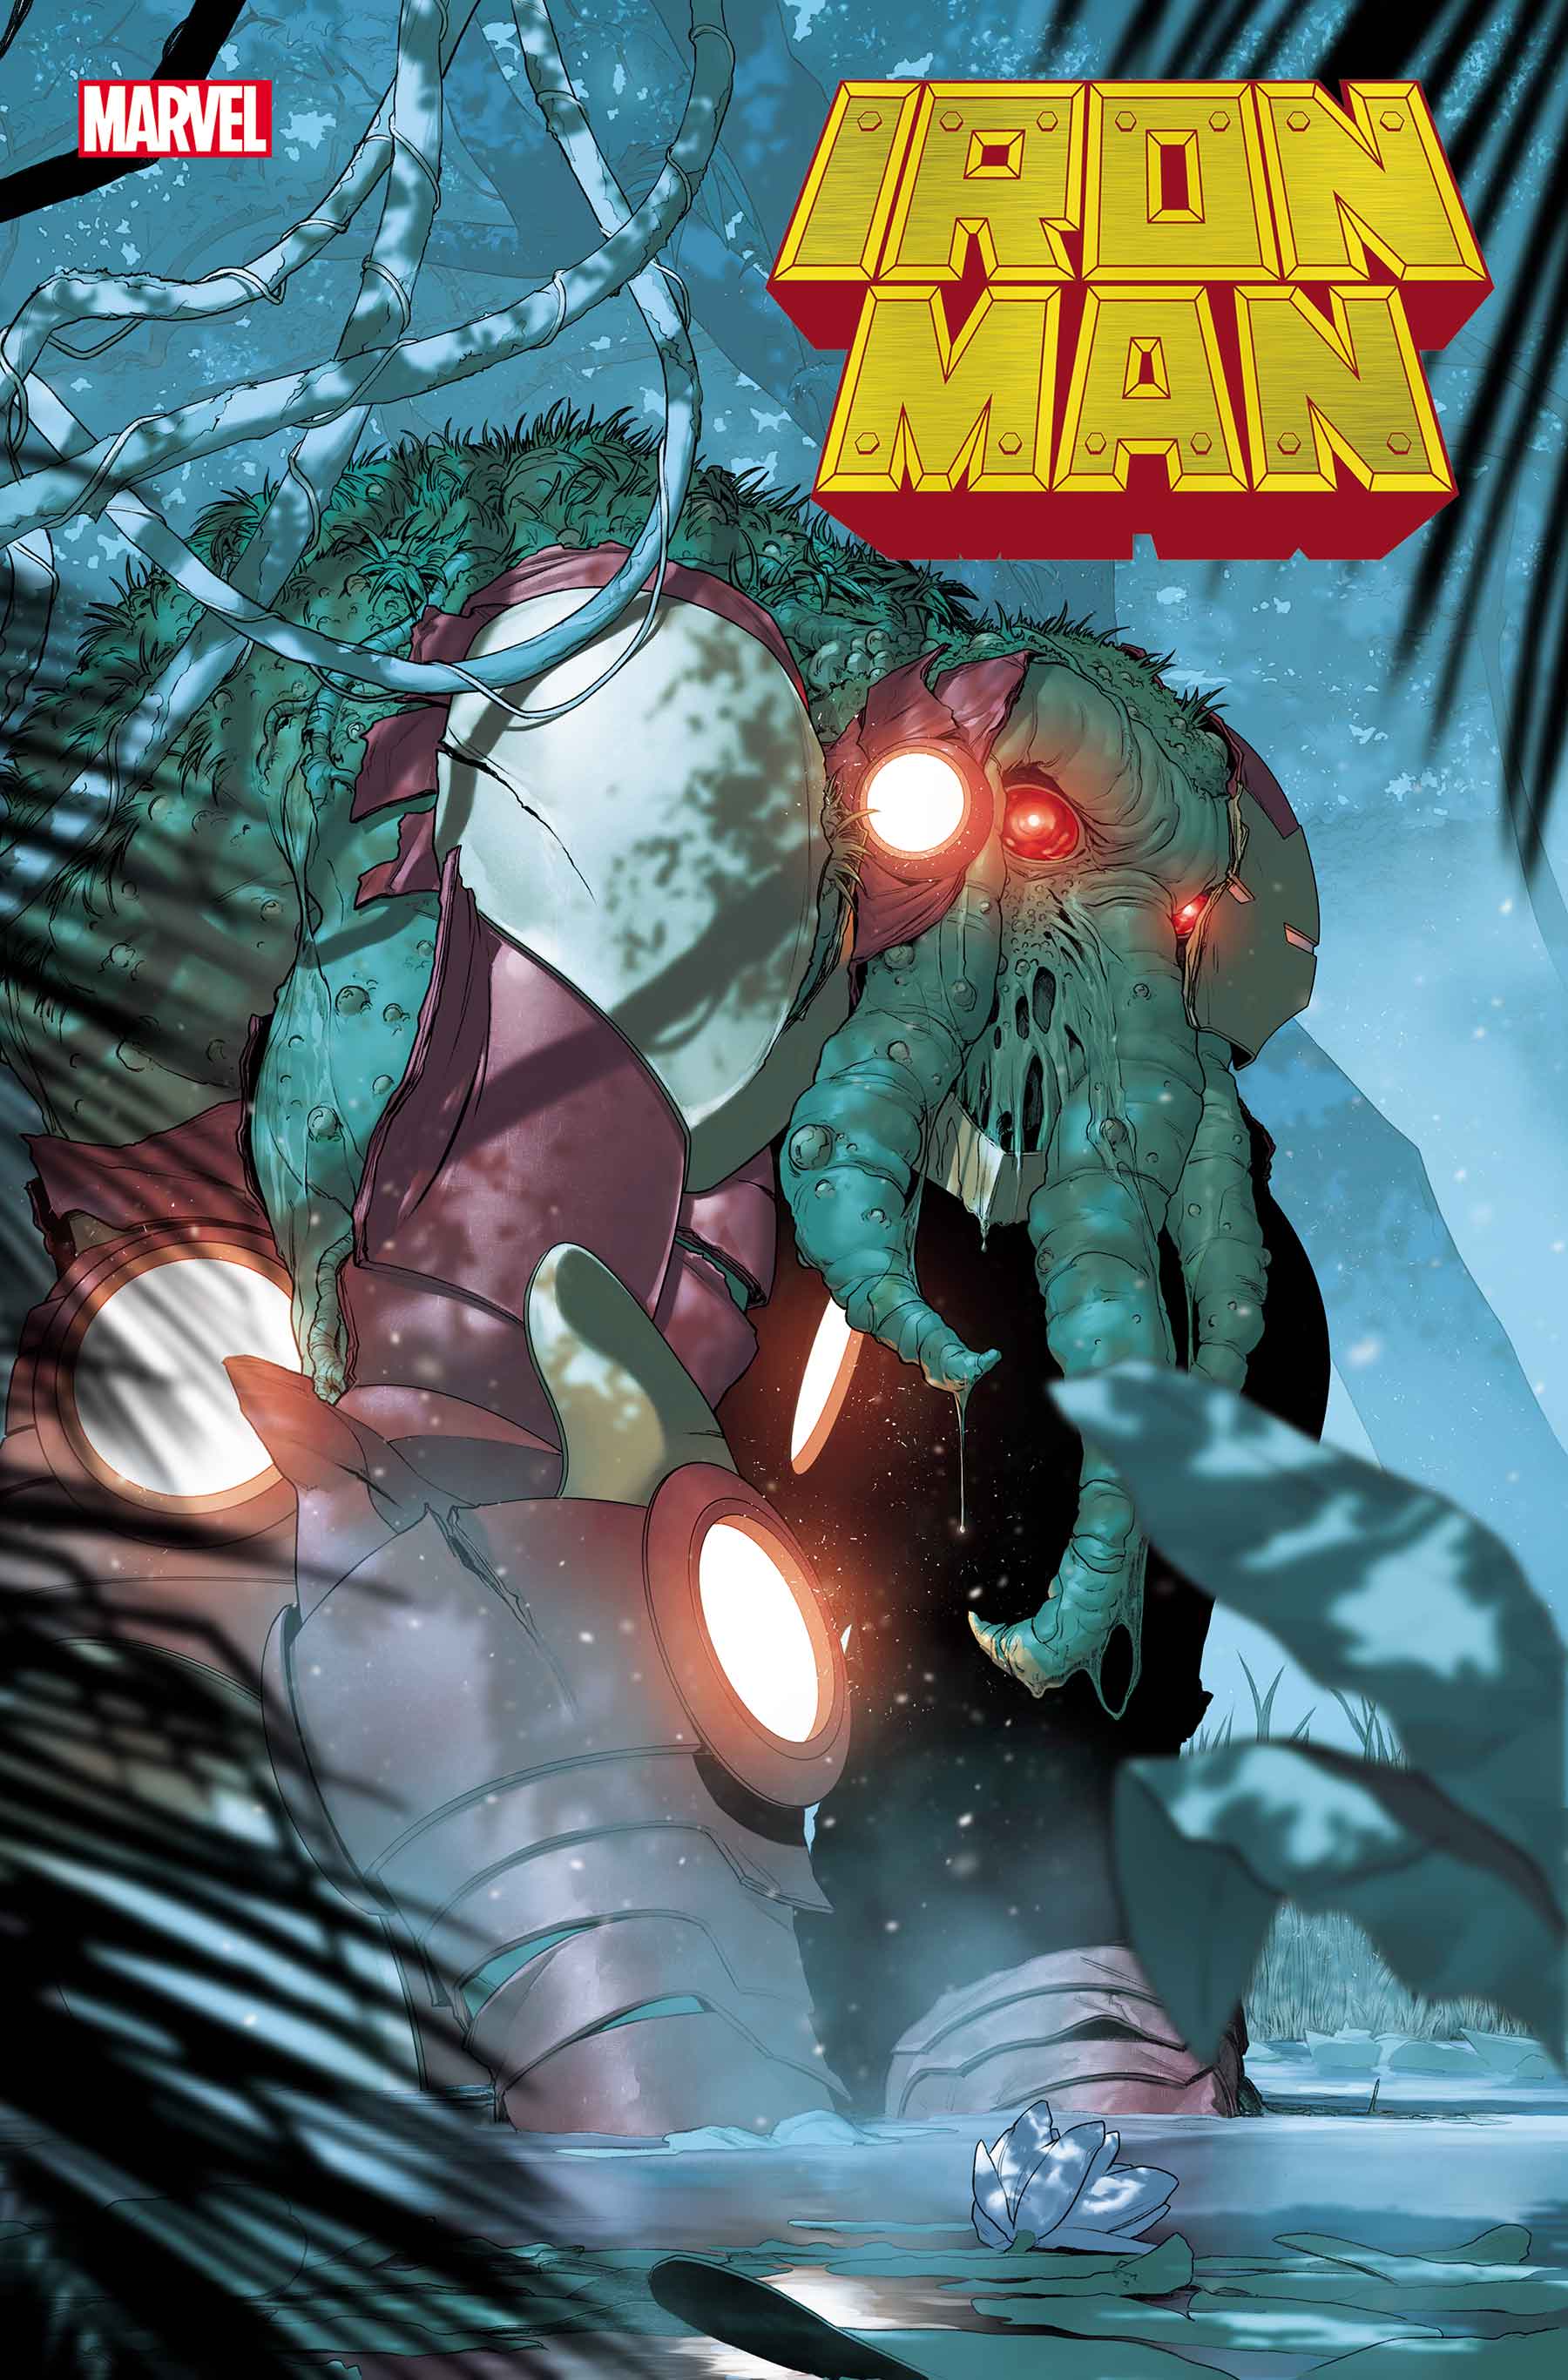 Iron Man (2020) #2 (Variant)